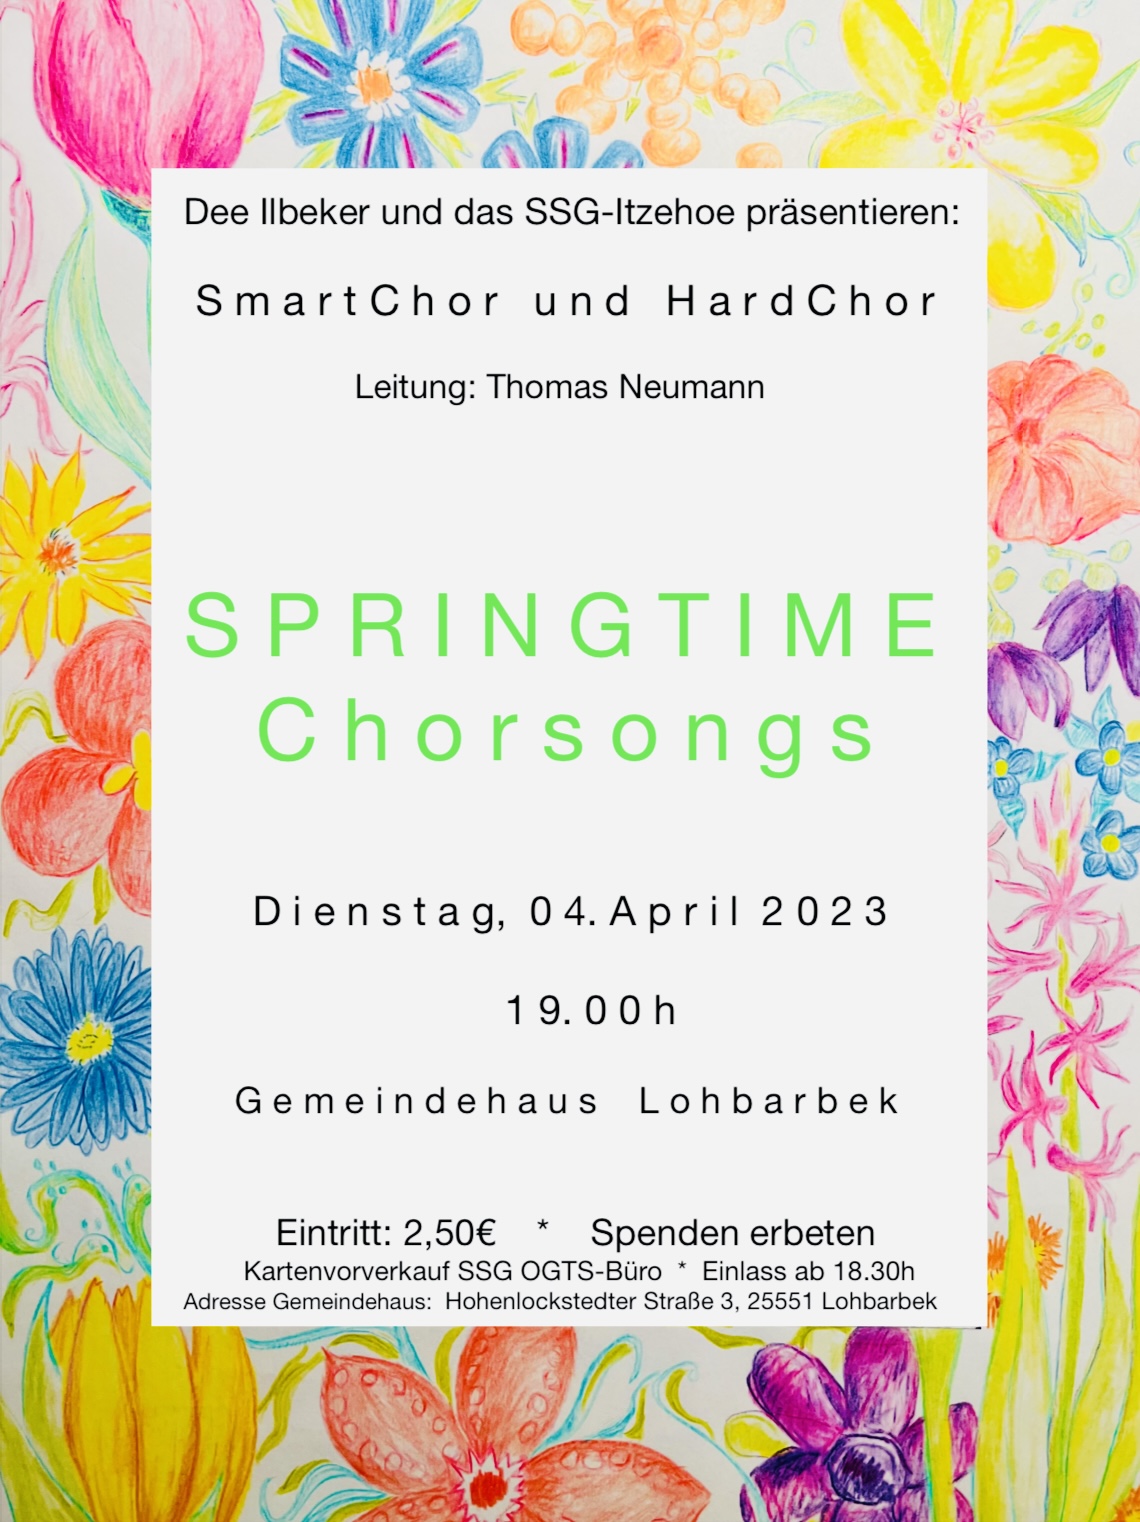 SmartChor und HardChor: Konzert in Lohbarbek